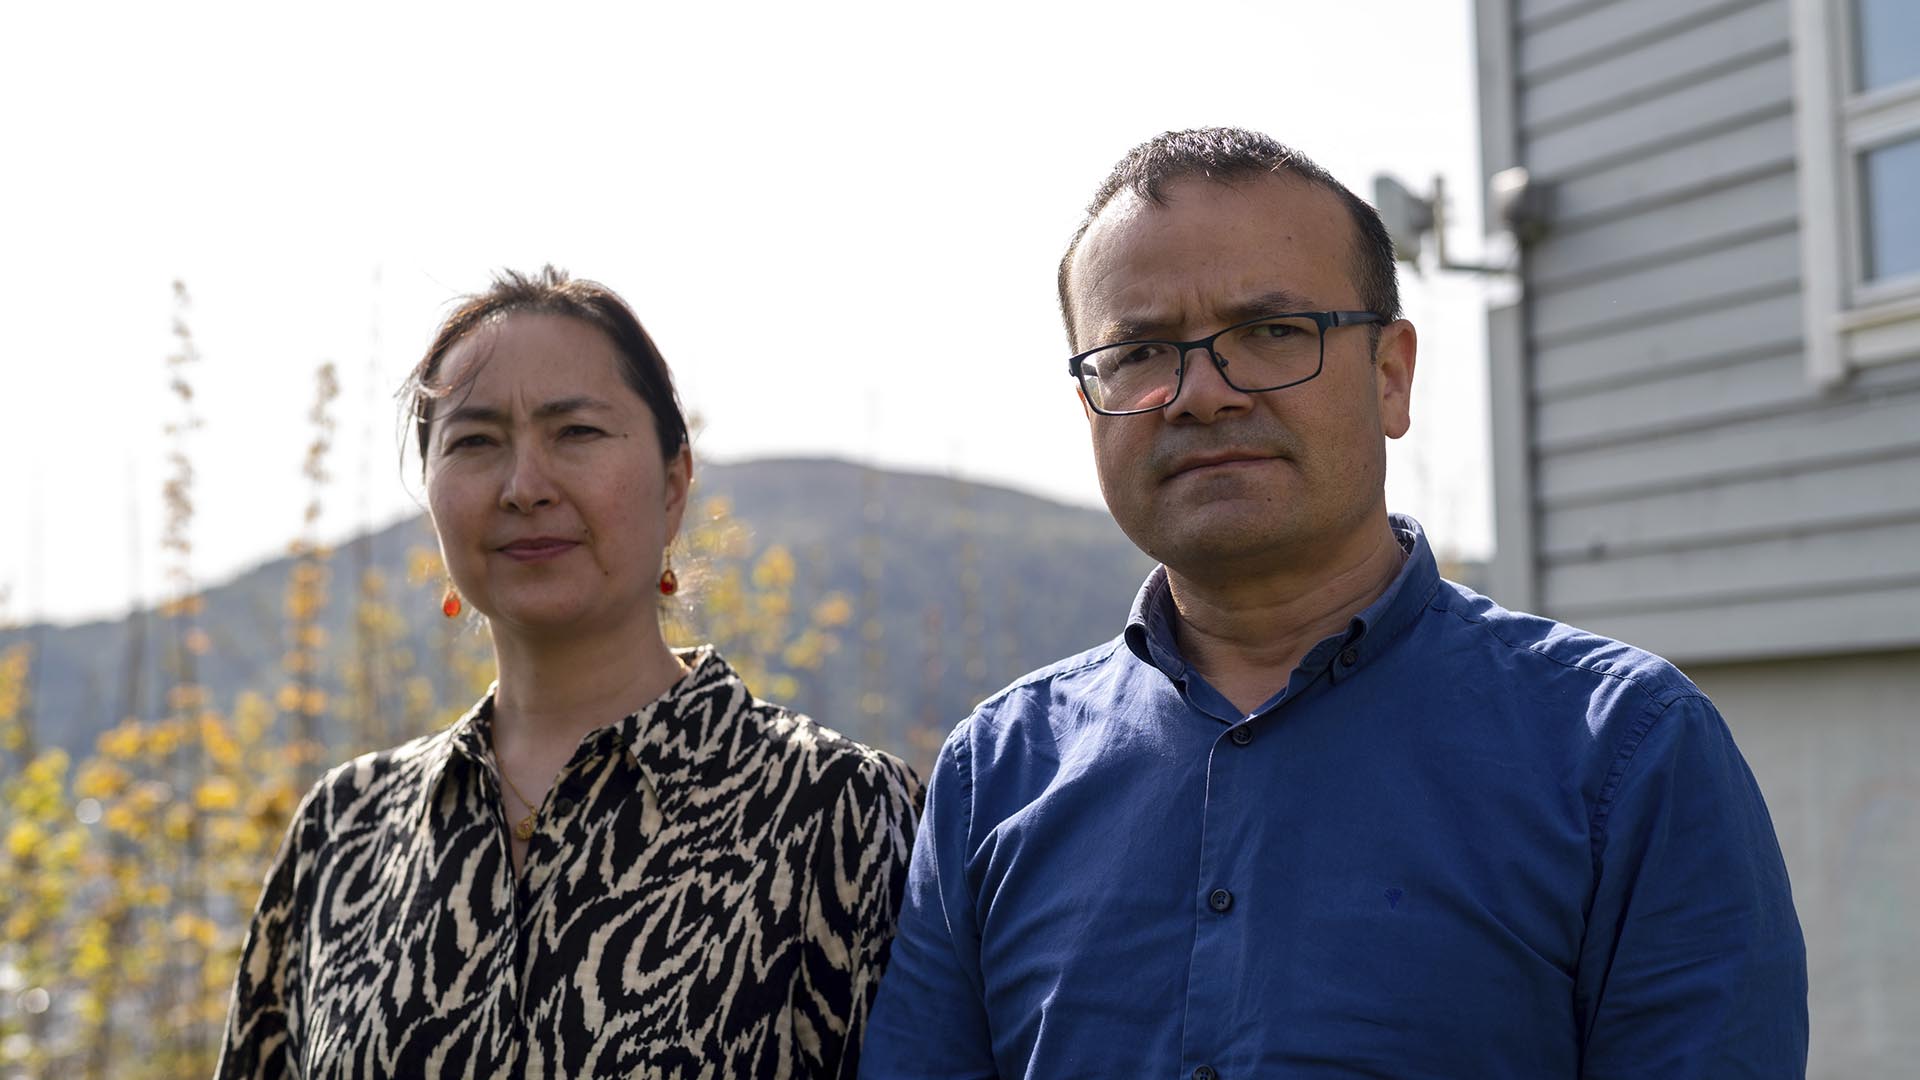 La pareja uigur Mihrigul Musa, a la izquierda, y Abduweli Ayup posan para una fotografía en su jardín en Bergen, Noruega, el 8 de mayo de 2022. Casi una de cada 25 personas en un condado en el corazón uigur de China ha sido sentenciada a prisión por delitos relacionados con el terrorismo. cargos, en lo que es la tasa de encarcelamiento más alta conocida en el mundo, según muestra una revisión de Associated Press de datos filtrados. Ayup y Musa conocían a amigos y familiares condenados a prisión según la lista. (Foto AP/Paul Johannessen)